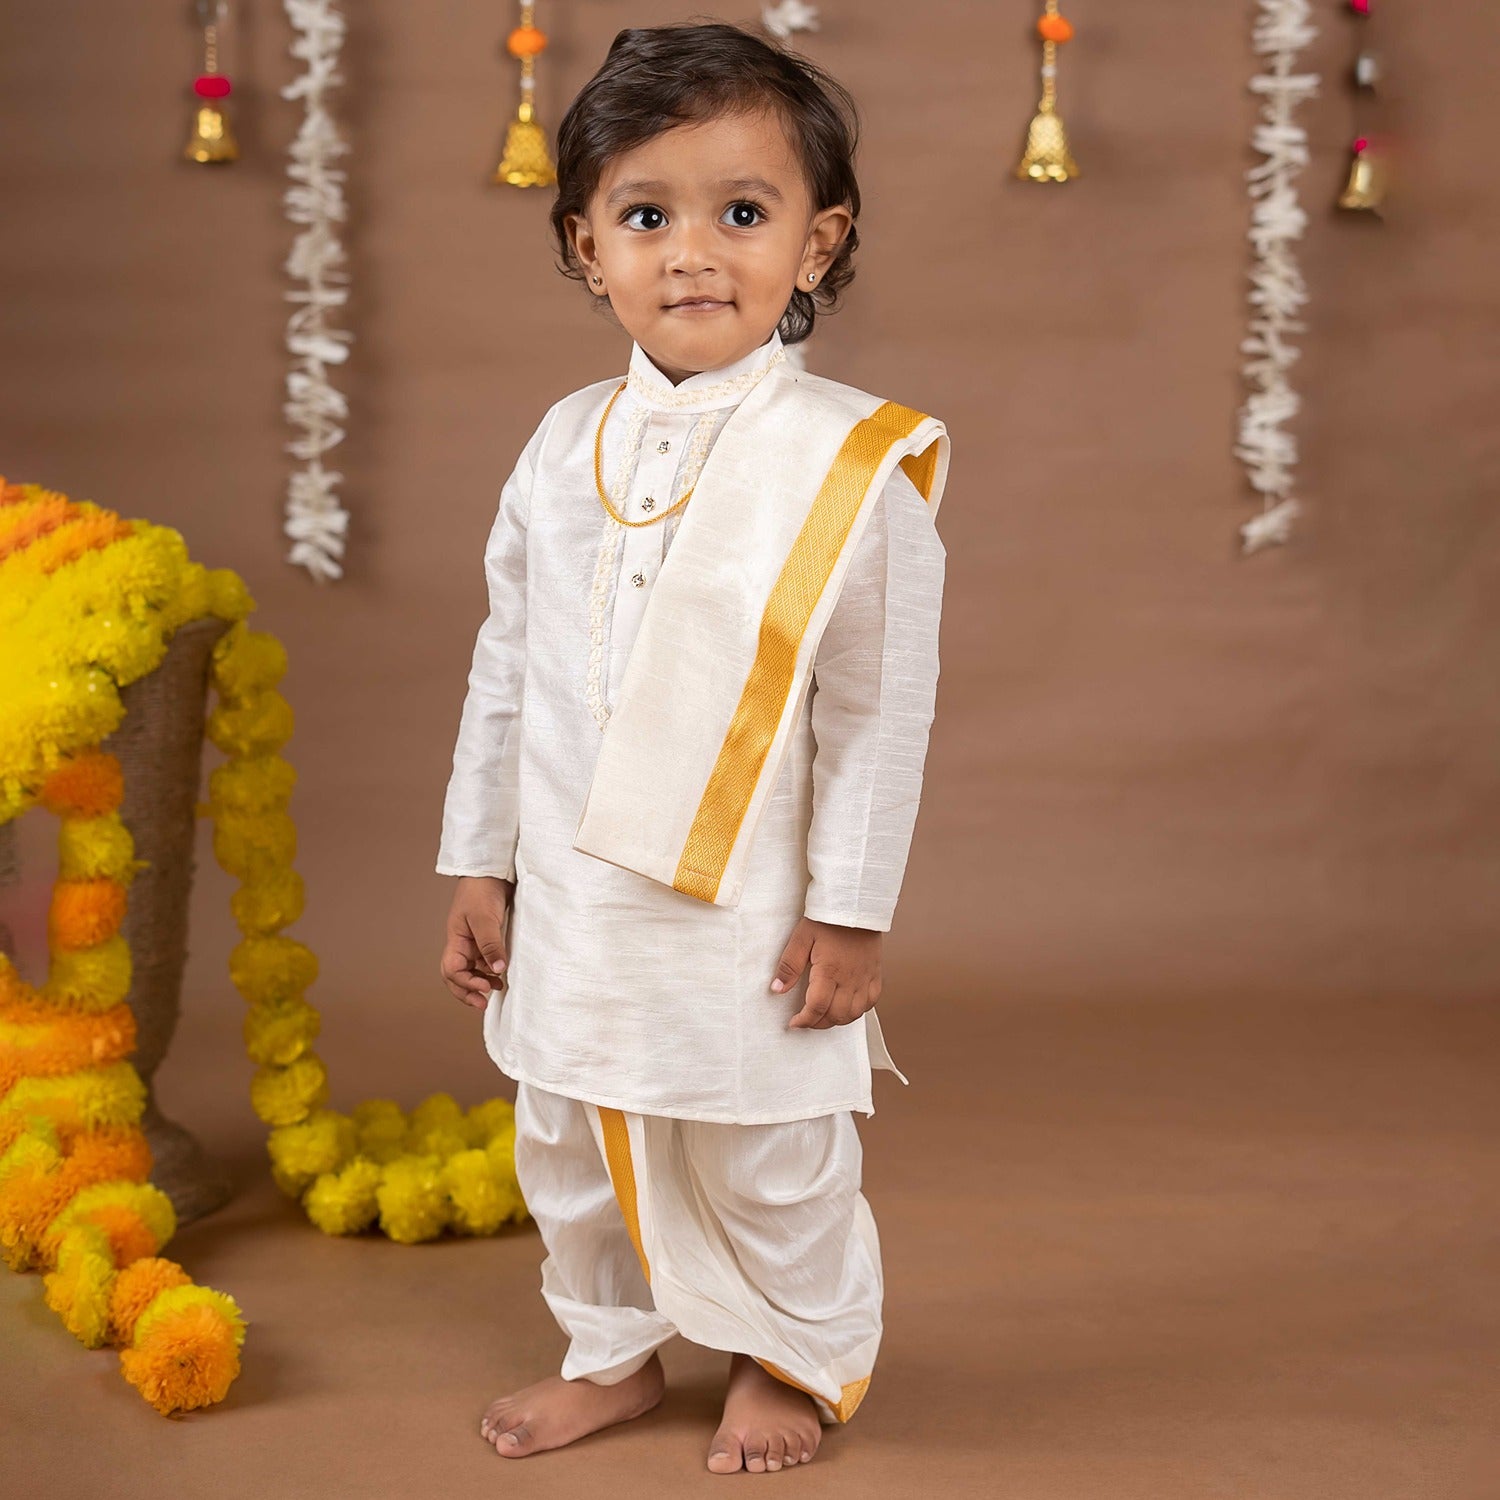 kids diwali clothes Archives - PR Submission Site